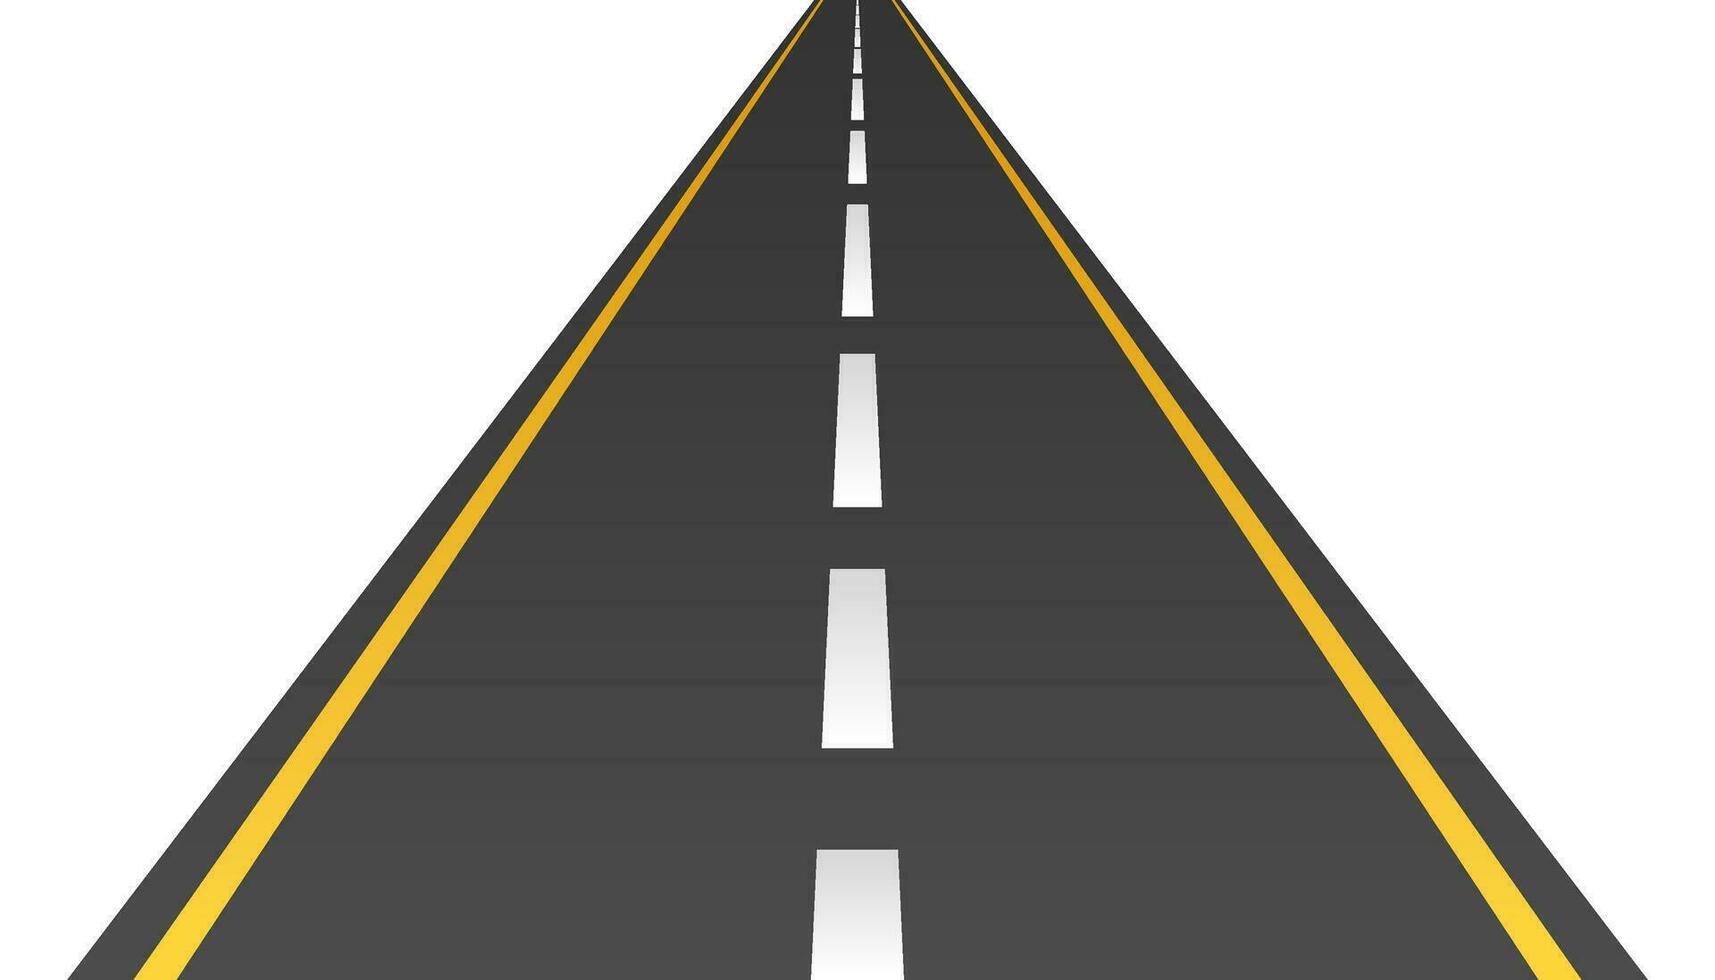 väg eller asfalt motorväg begrepp vektor